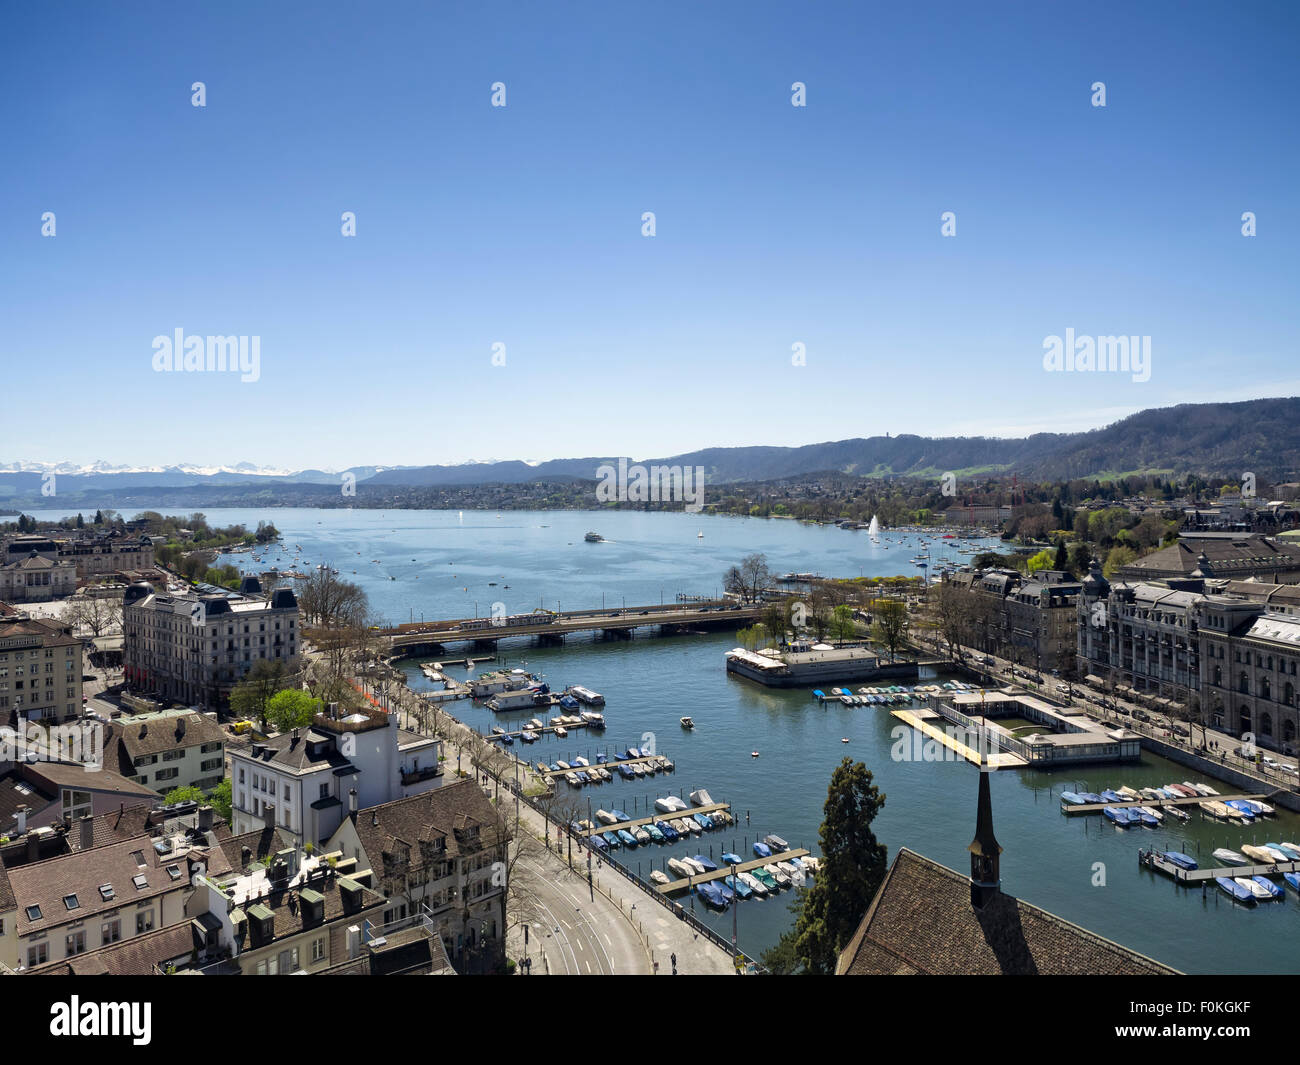 La Suisse, Zurich, la Limmat, le lac de Zurich, les Alpes en arrière-plan Banque D'Images